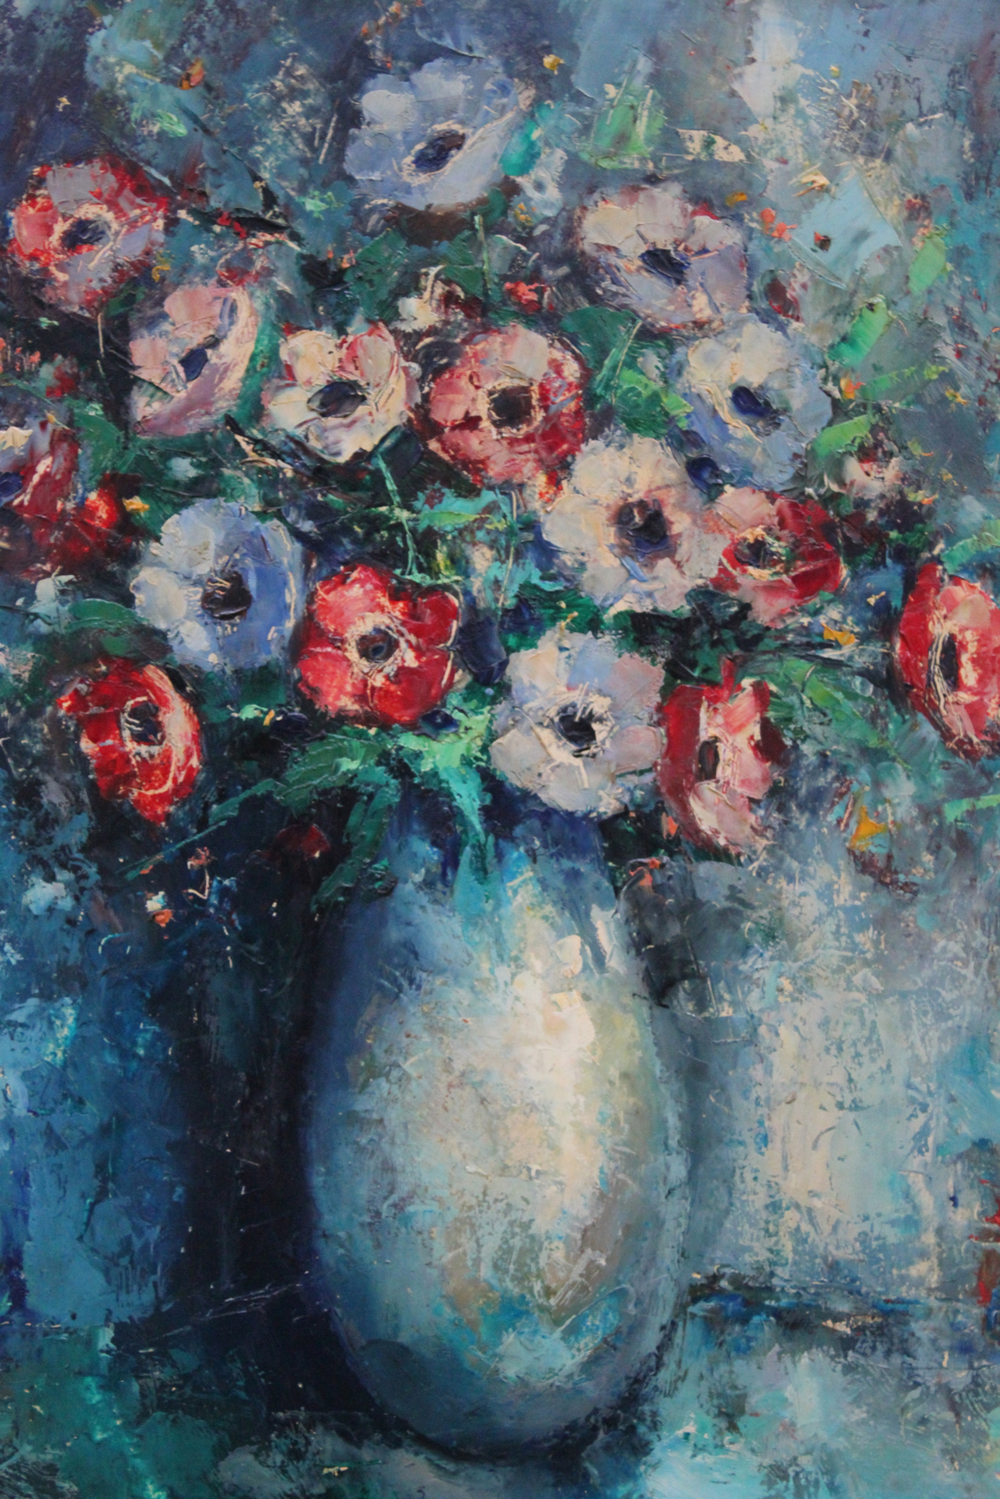 Bernard Bosschaert (1935- ), A still life with anemones, oil on panel